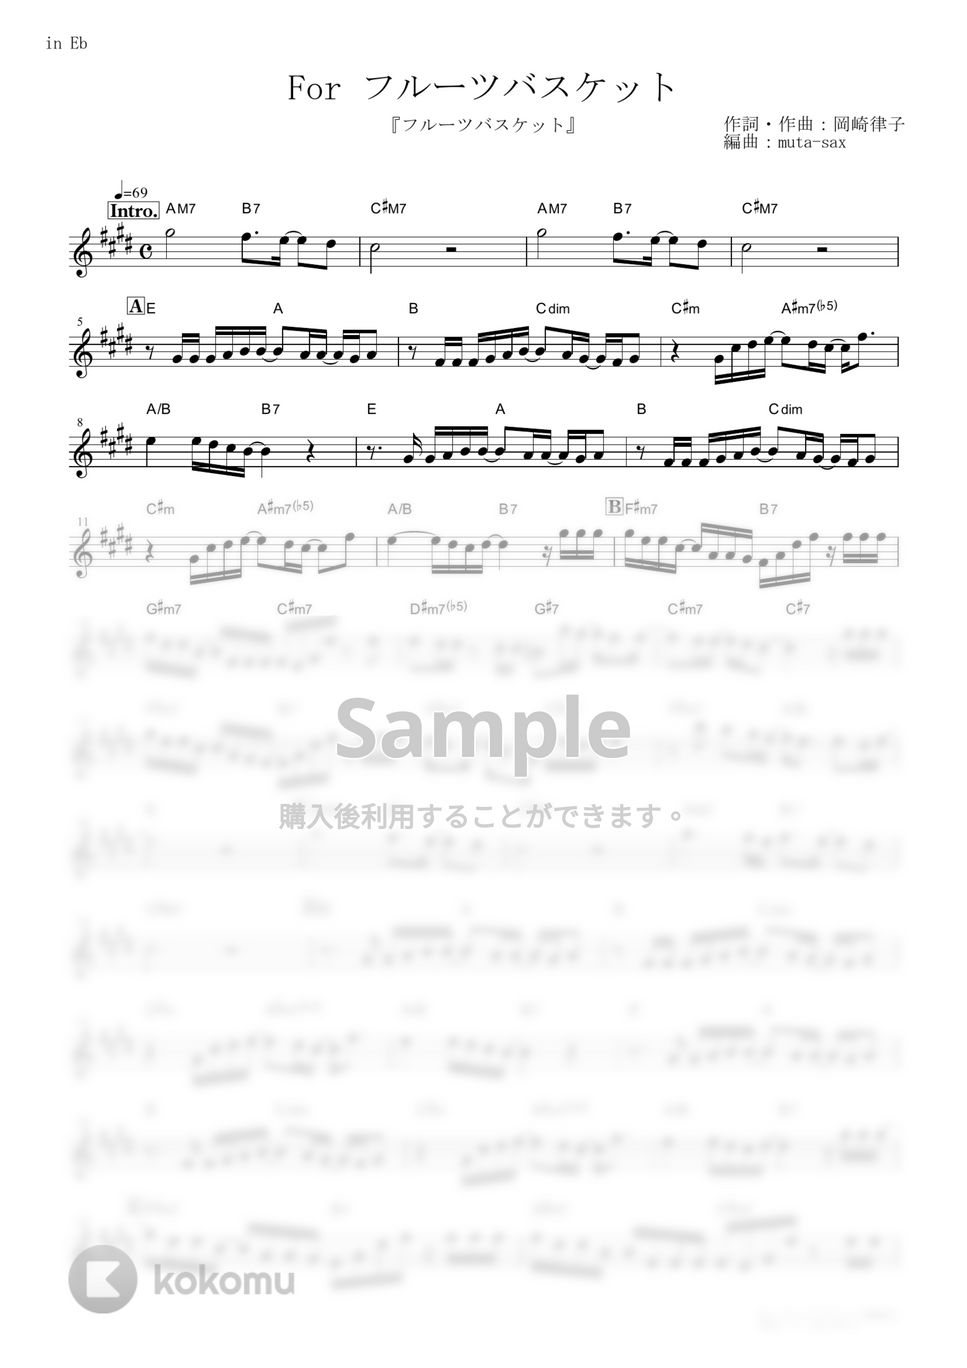 岡崎律子 - For フルーツバスケット (『フルーツバスケット』 / in Eb) by muta-sax